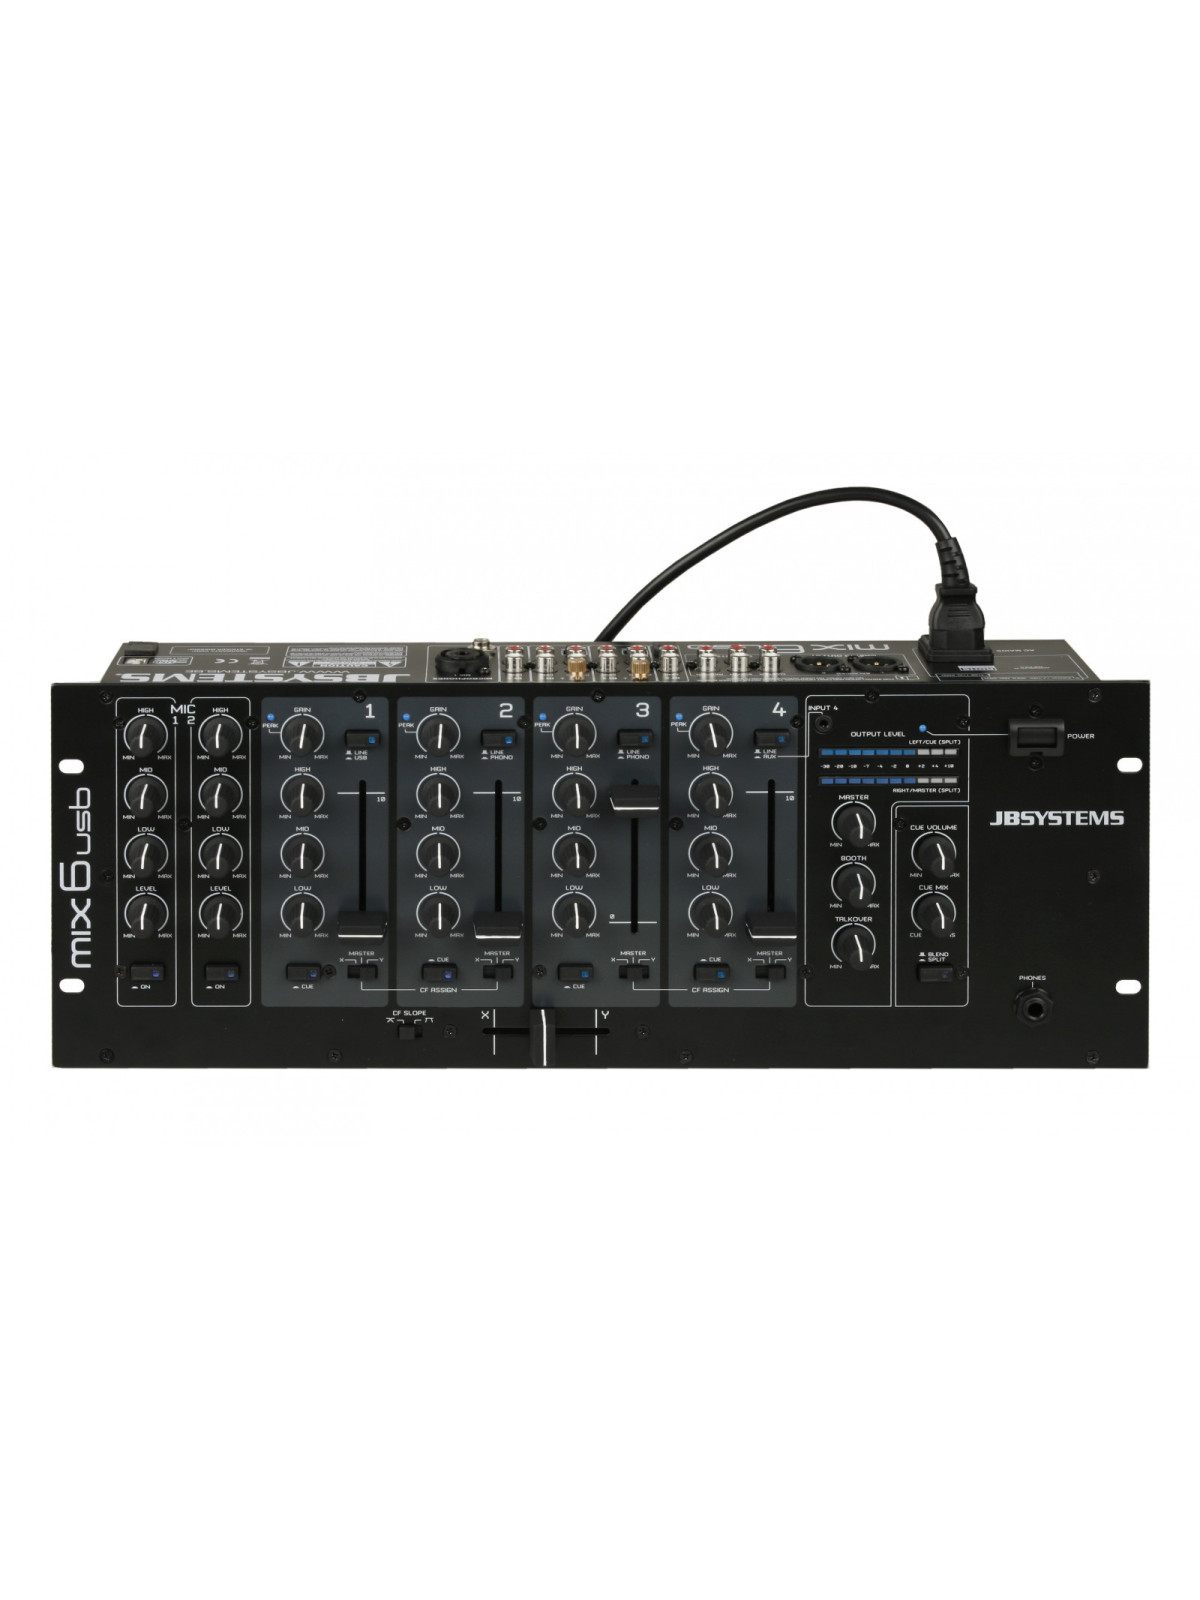 Table de mixage 4 canaux, USB/MP3/BT, enregistreur - STM3030